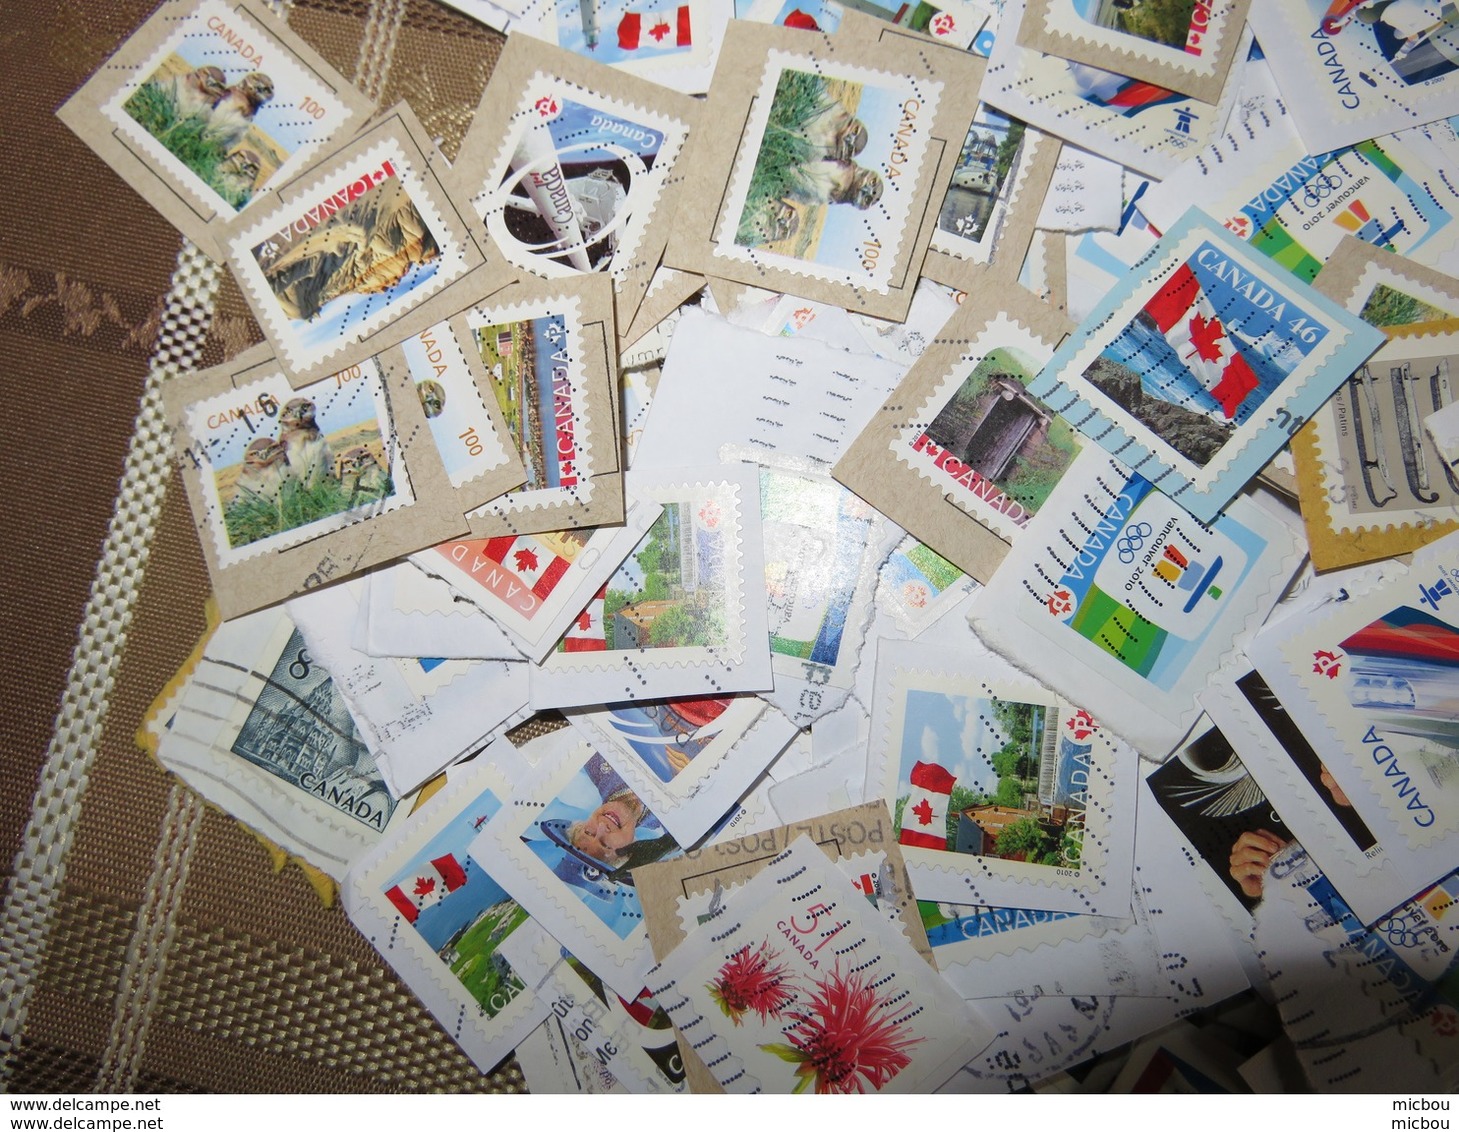 ##S2, Canada, vrac, plus de 1000 timbres diversifiée, more than 1000 diversified stamps